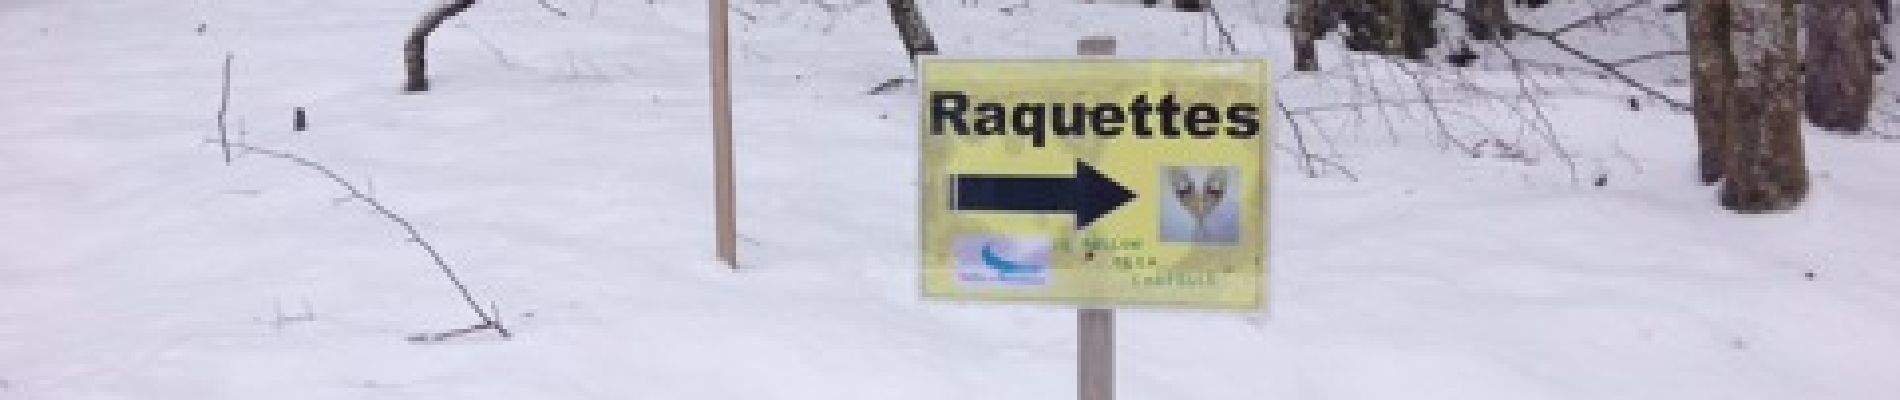 Randonnée Raquettes à neige Châtel - Châtel tennis - Chapelle d'Abond - Photo